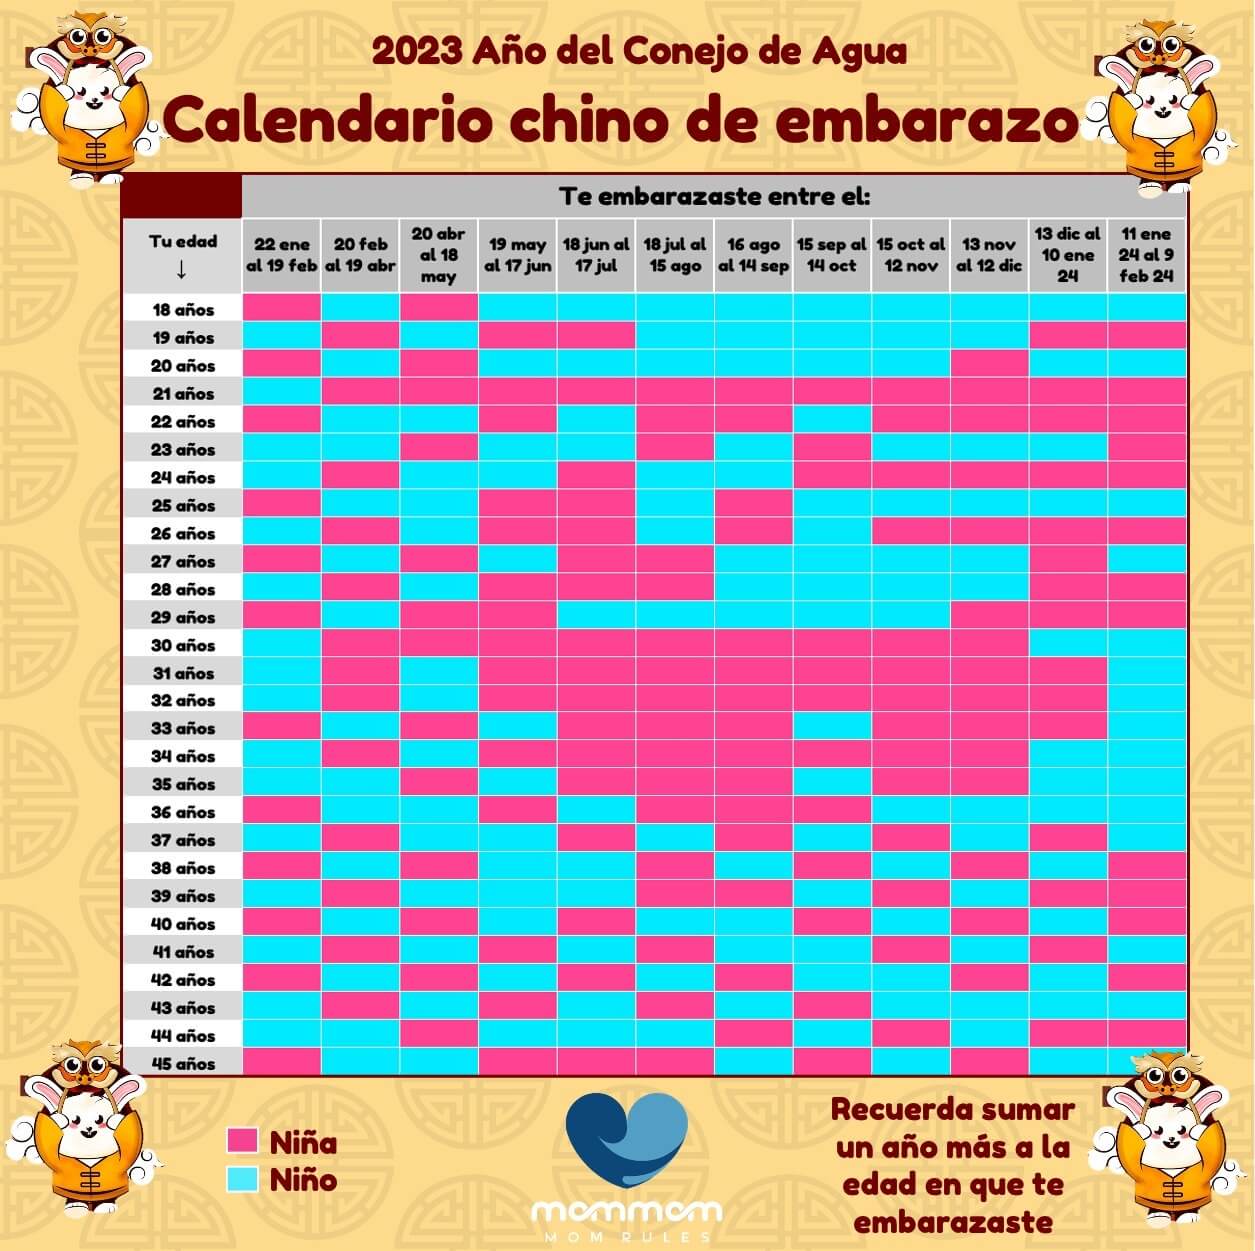 El Calendario Chino Del Embarazo 2023 Revela Si Tu Bebé Es Niño O Niña